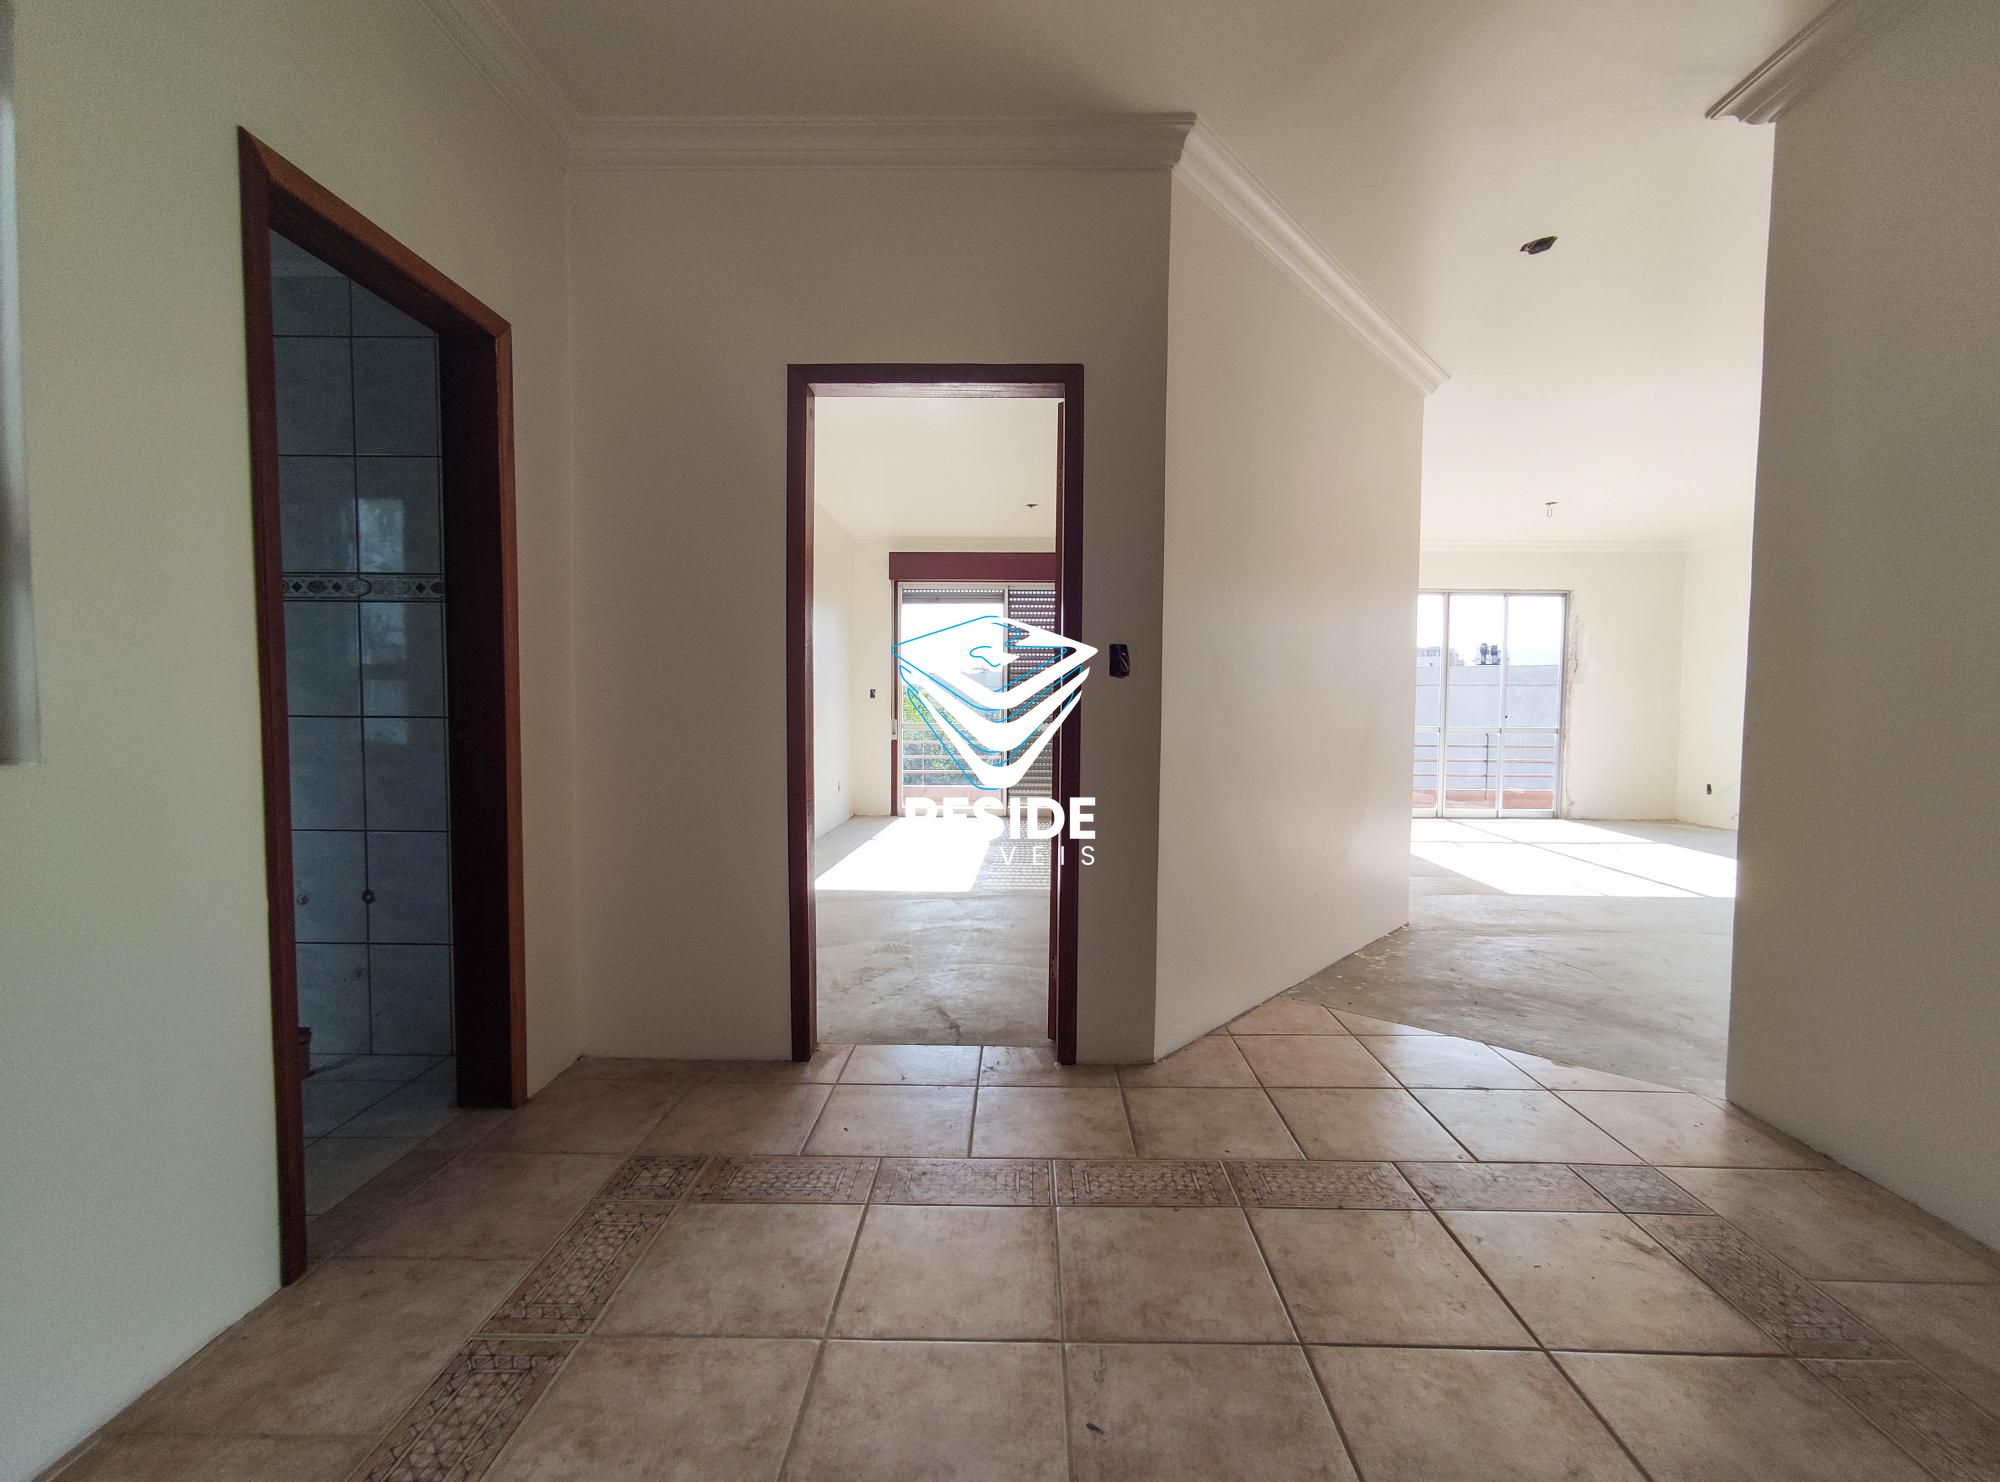 Apartamento com 3 Dormitórios à venda, 205 m² por R$ 570.000,00